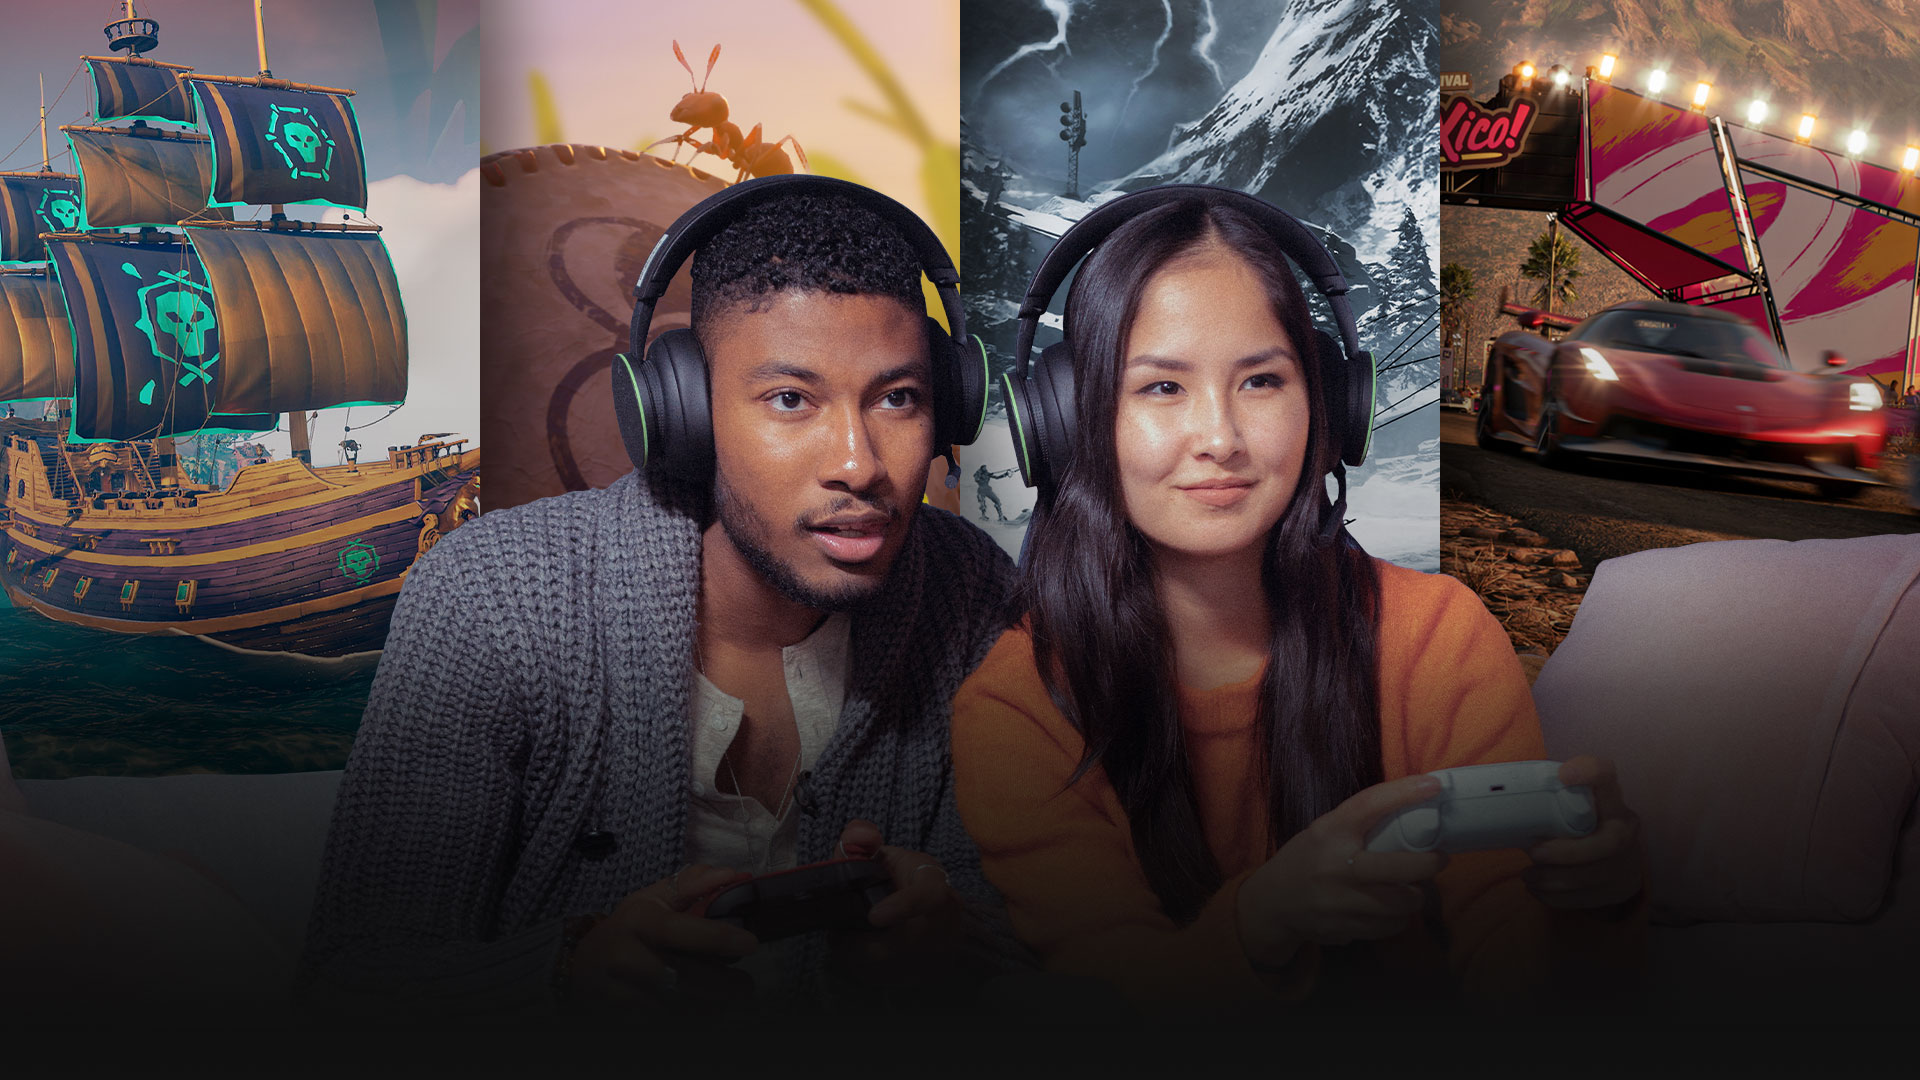 Fire spillere sitter på en gyllen sofa med en kollasj av scener fra Xbox-spill bak dem, inkludert Forza Horizon 5 og Grounded